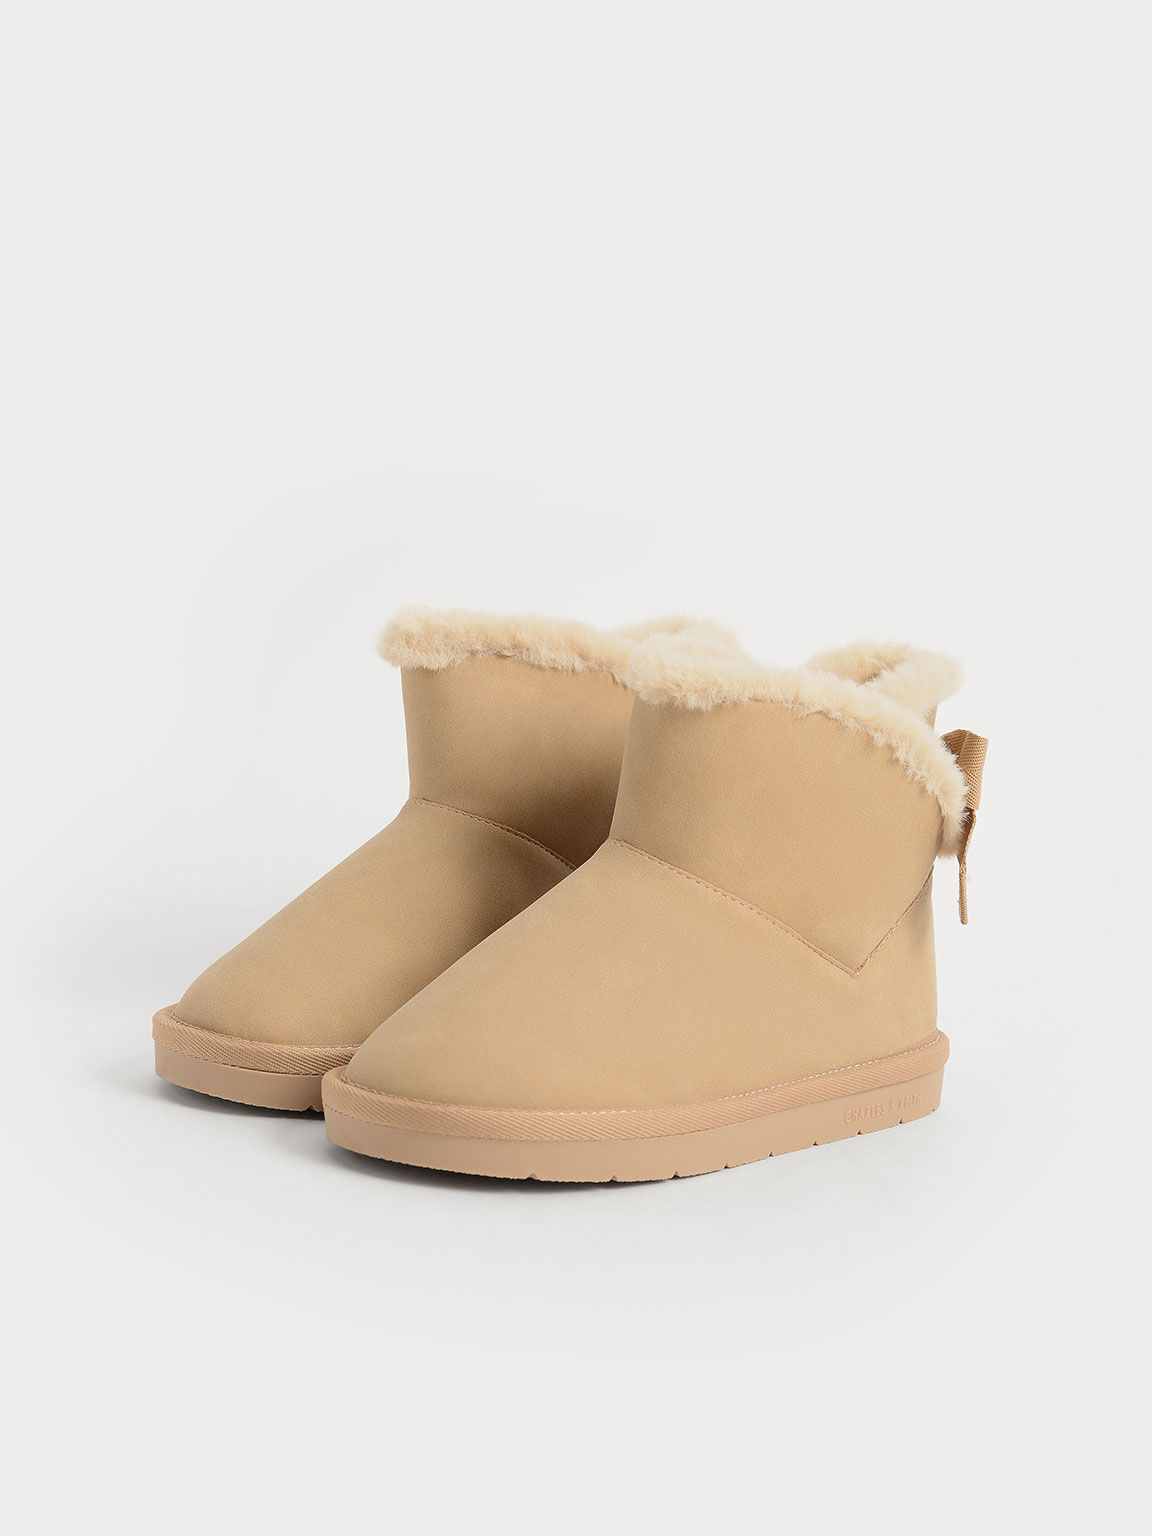 Girls' Fur-Trimmed Slip-On Ankle Boots, Camel, hi-res